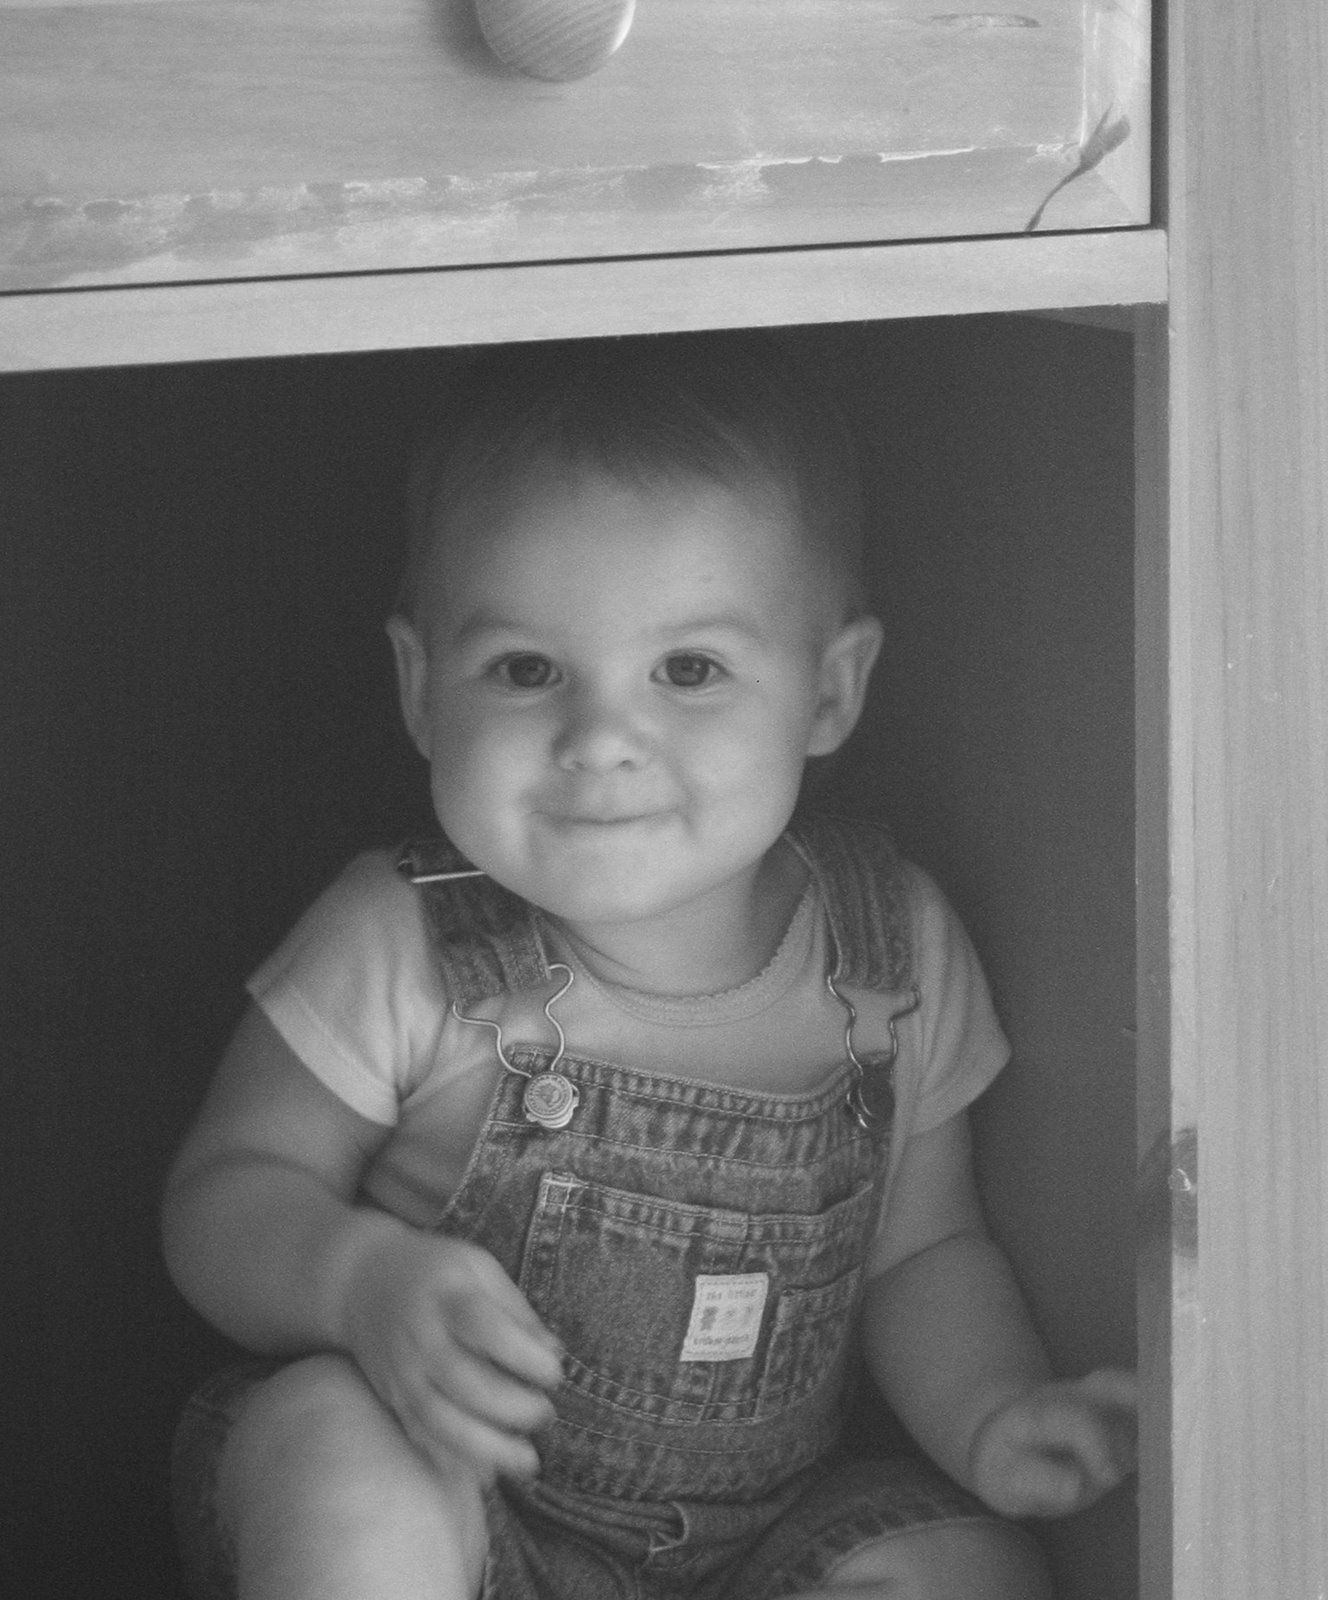 [Josie+in+cupboard.jpg]